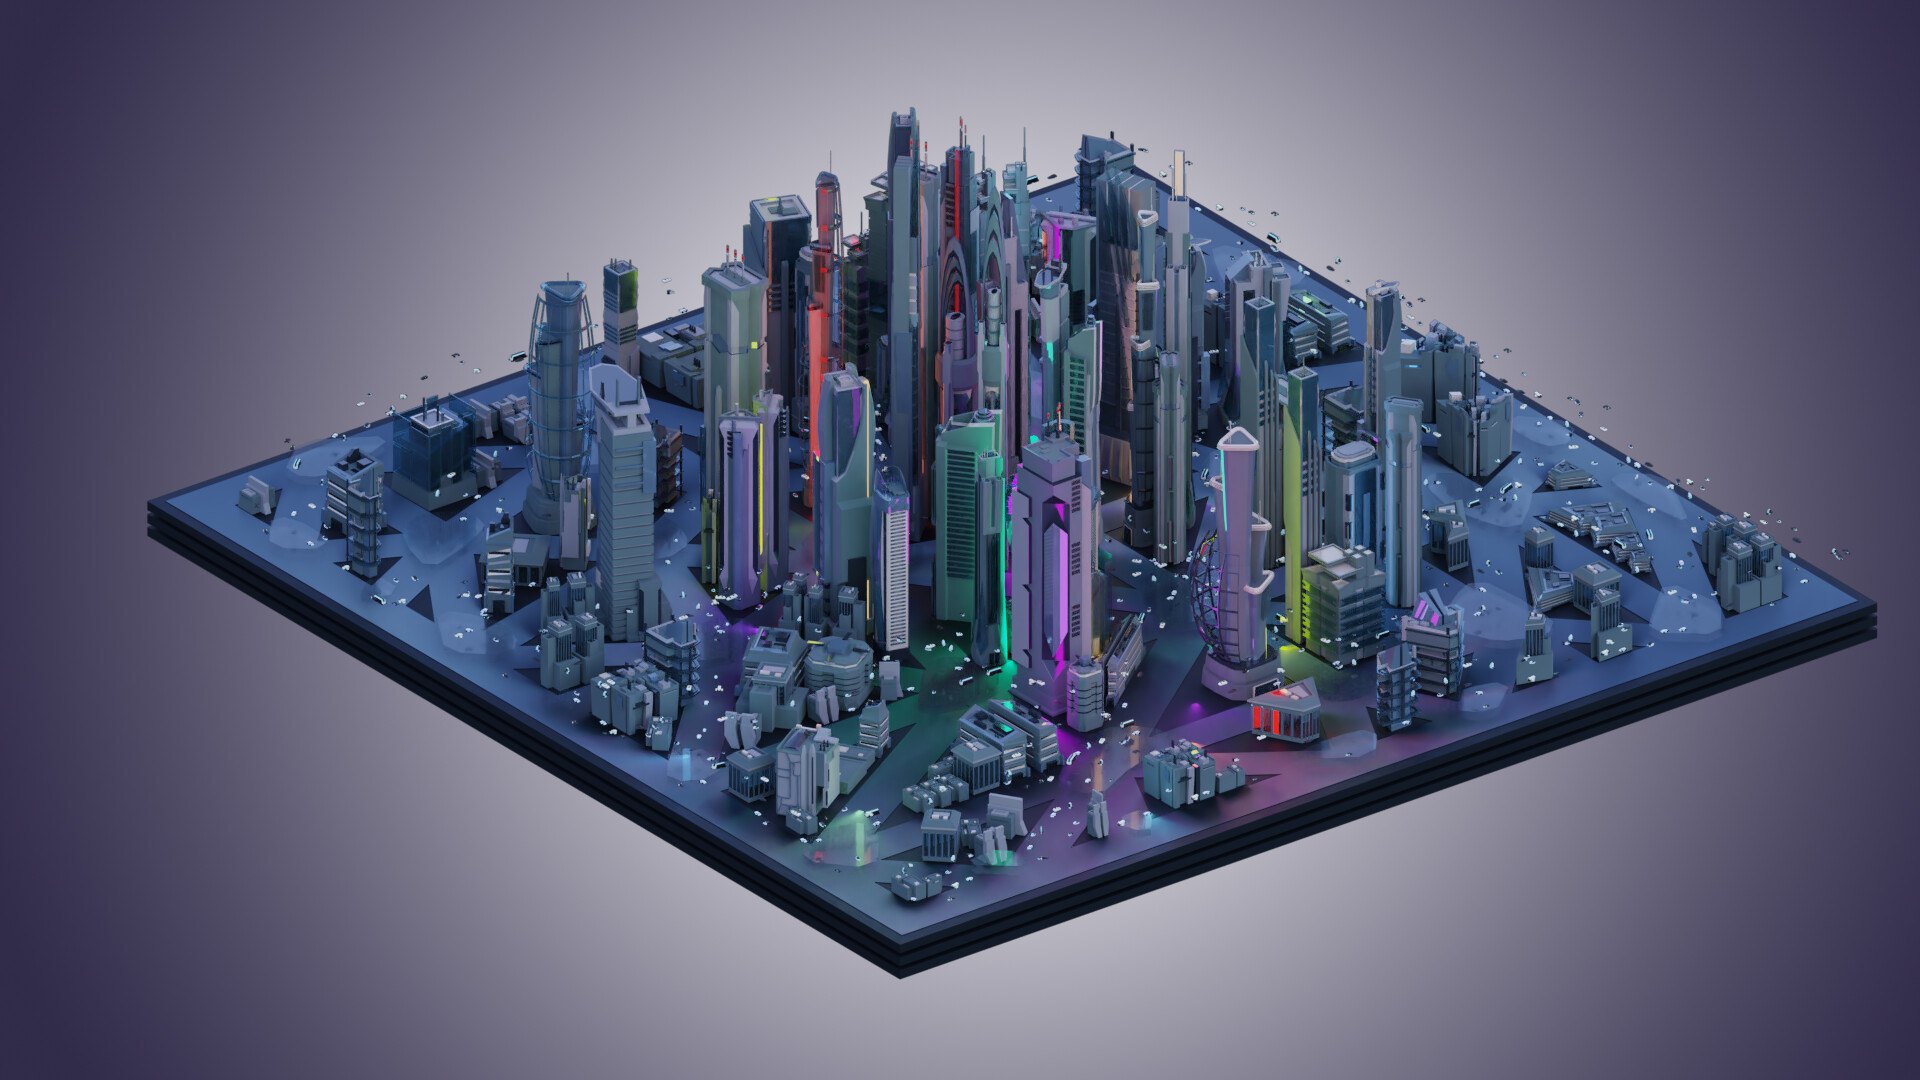 Компьютерное моделирование игра. Scifi City архитектура 3d model лазер. CGTRADER 3d. 3д моделирование. Модель города будущего.